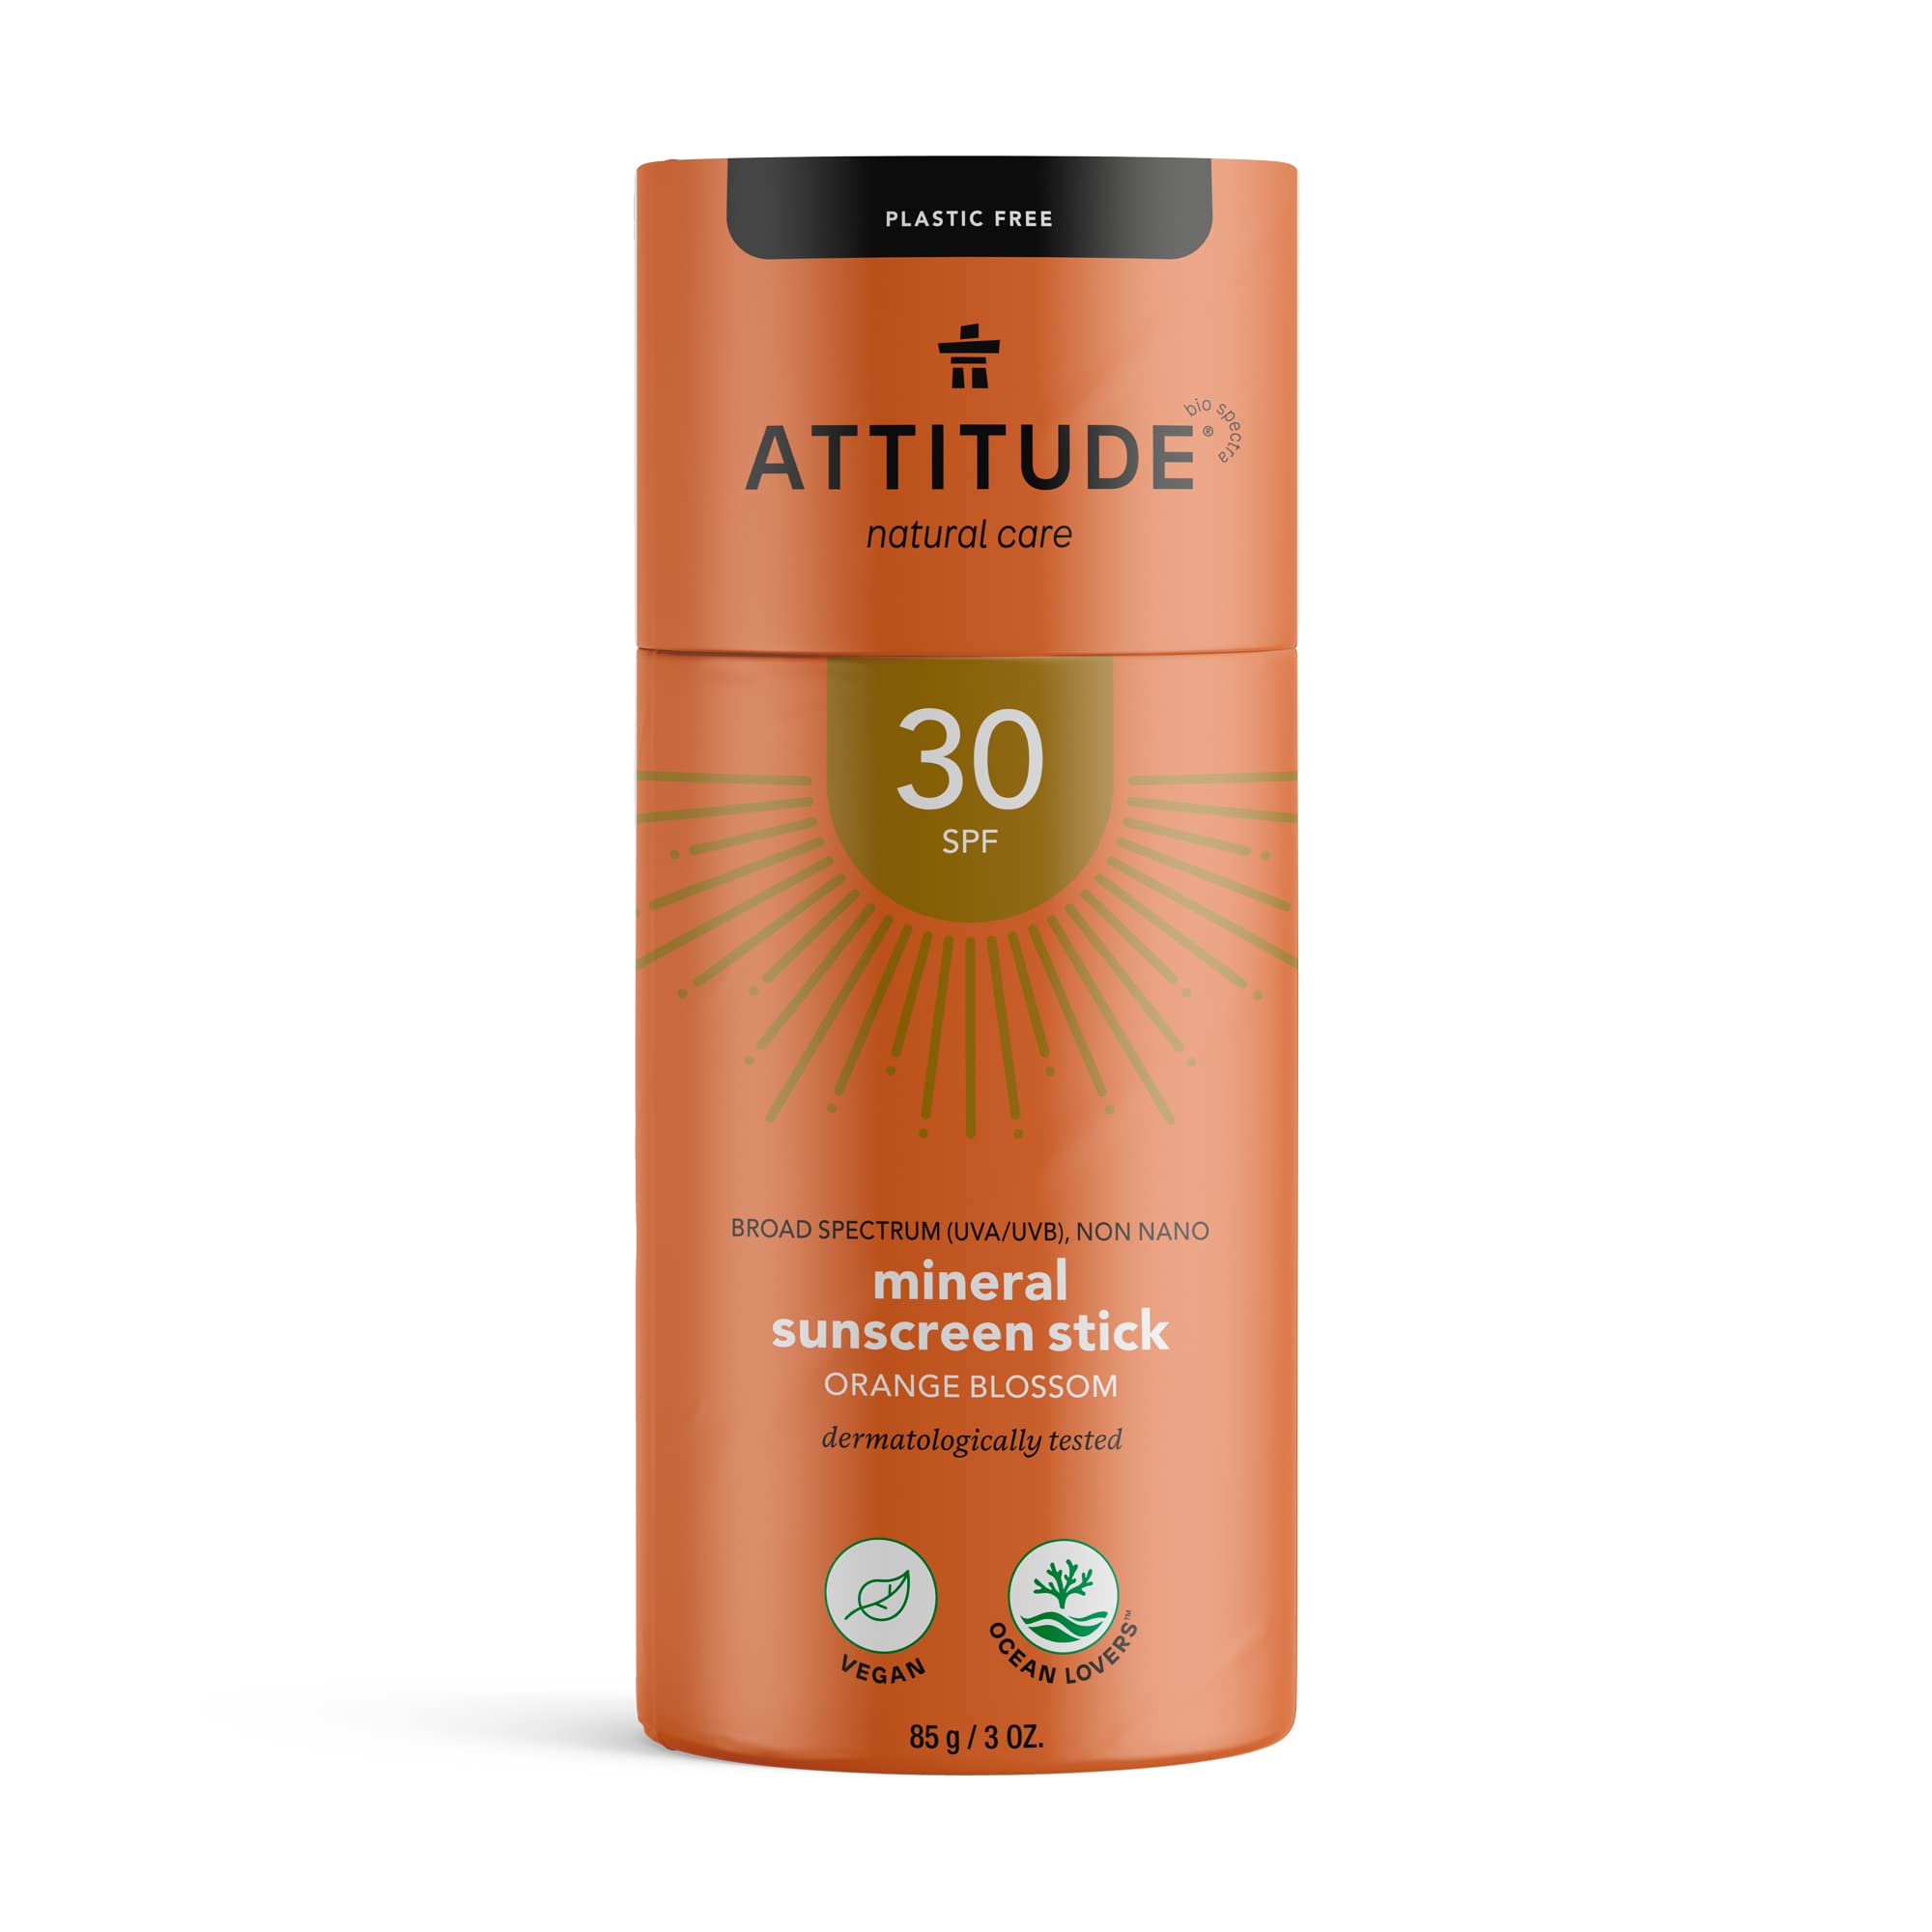 ATTITUDE Sunscreen Stick LSF 30, plastikfrei, wasserlos, hypoallergen, pflanzliche und mineralische Inhaltsstoffe, vegane Sonnenpflegeprodukte, Orangenblüte, 85 Gramm